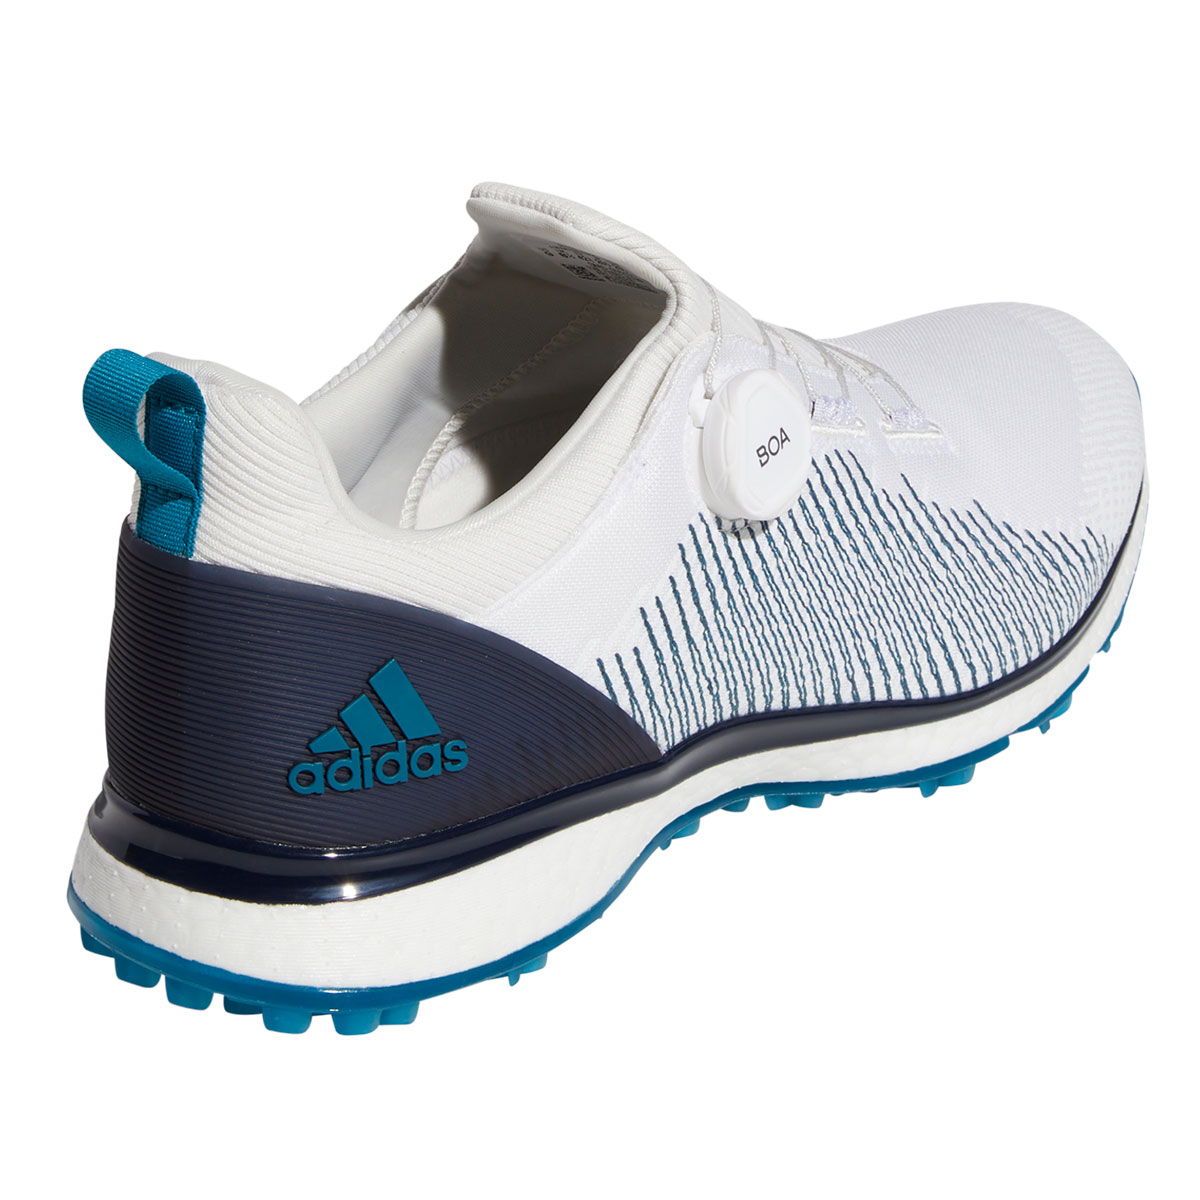 adidas forged fiber golf 